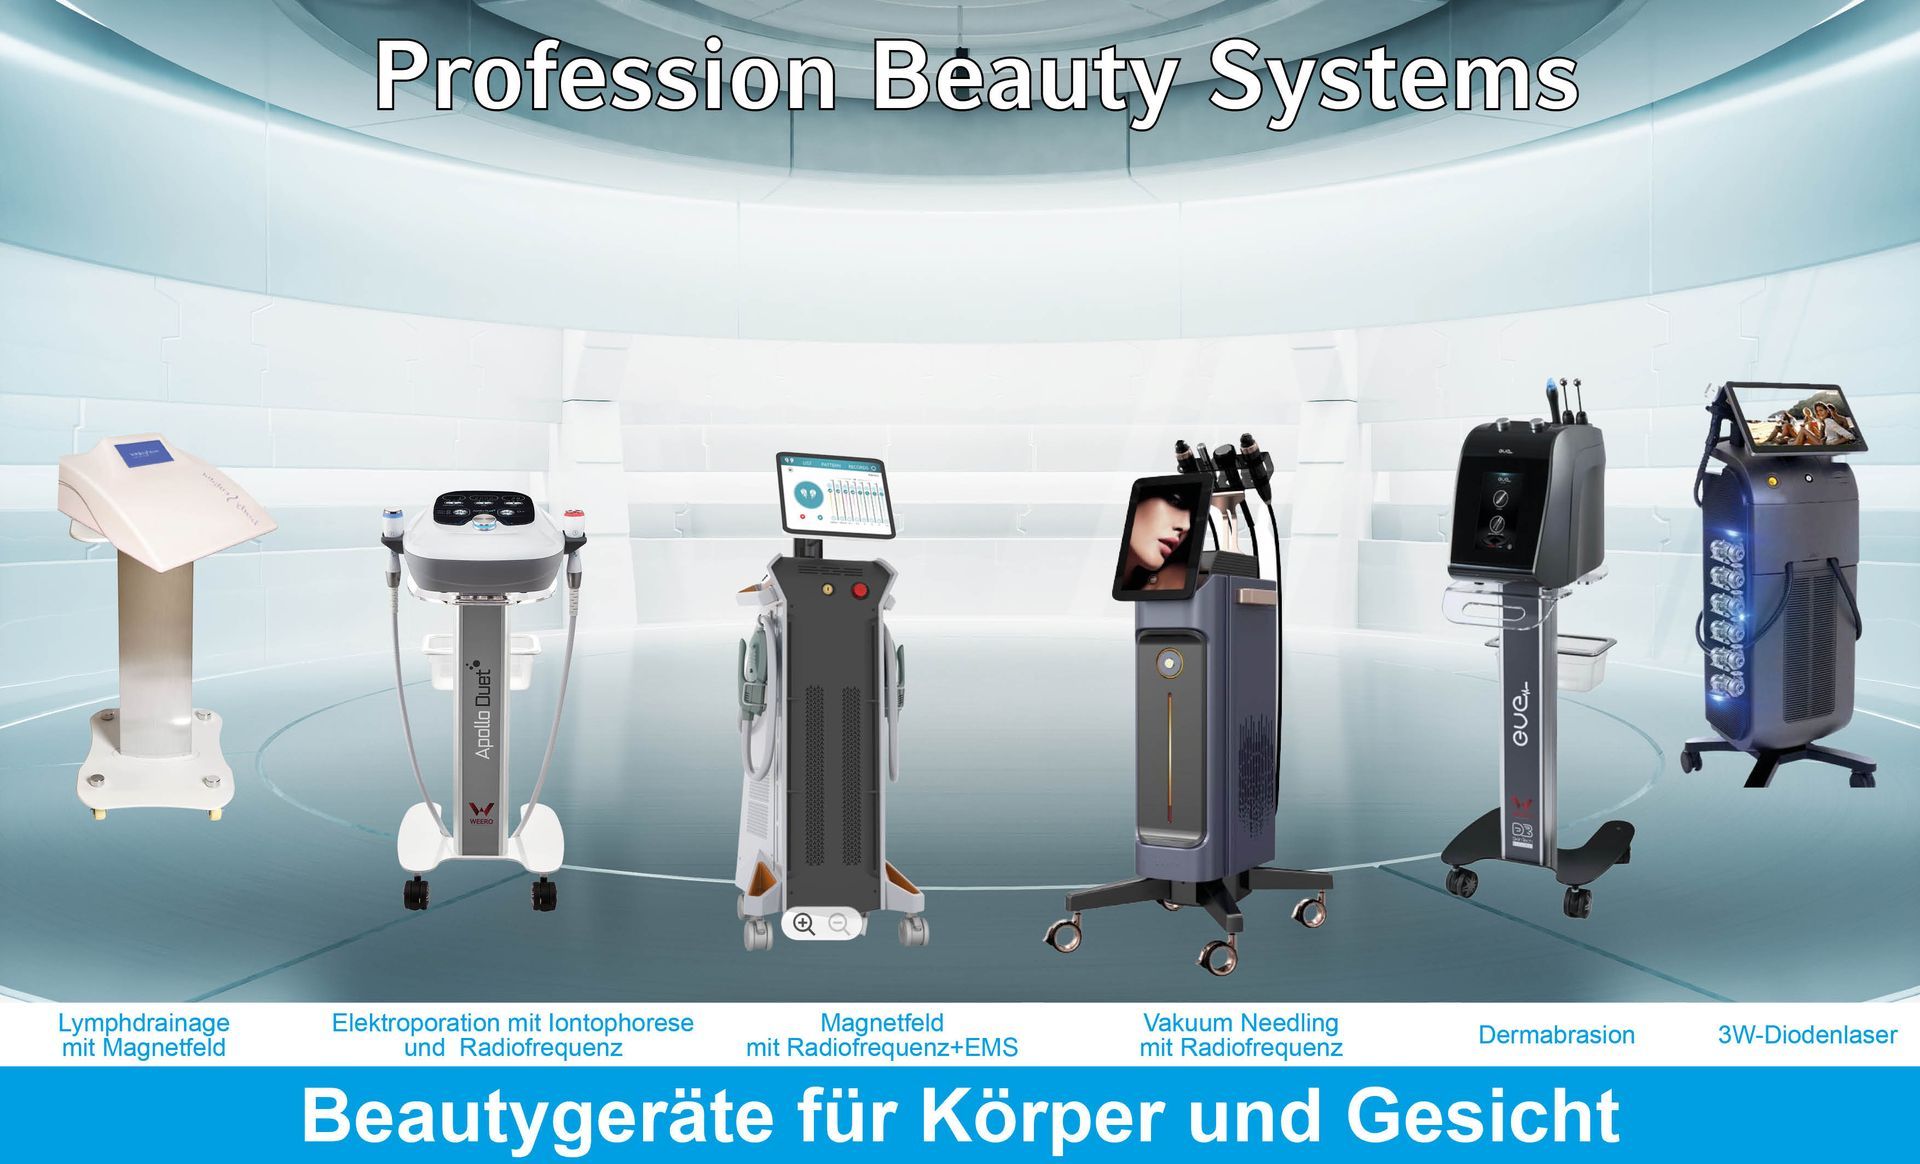 Kosmetikgeräte, professionelle Kosmetikgeräte, Anbieter Kosmetikgeräte, Hersteller Kosmetikgeräte, beste Kosmetikgeräte